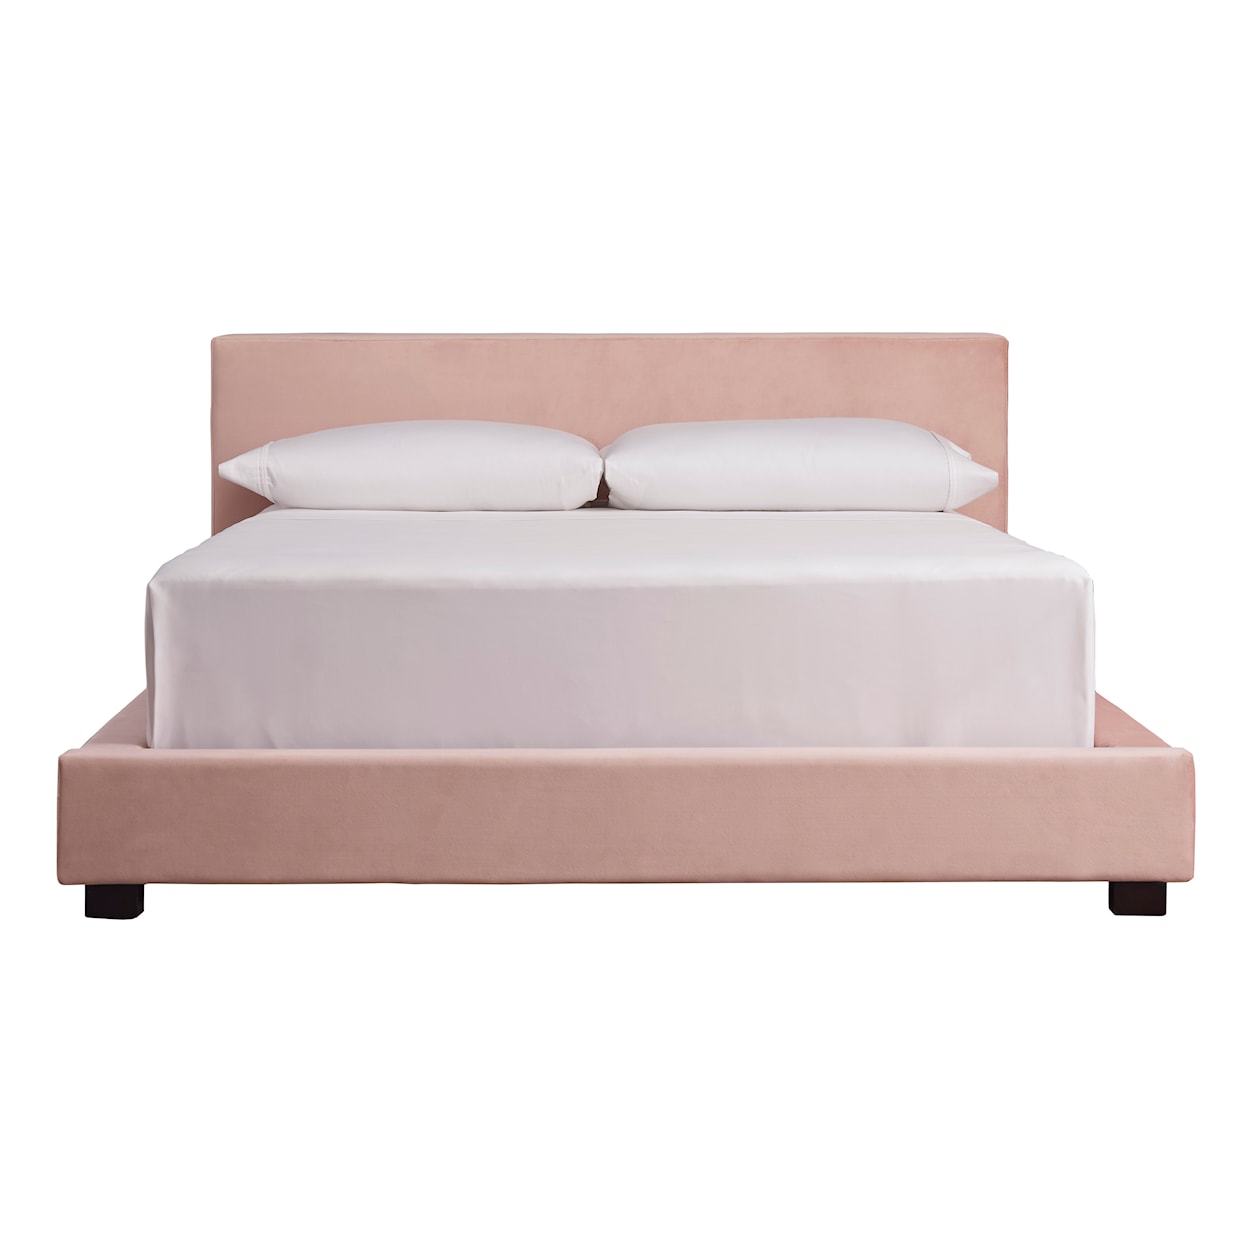 Ashley Chesani Full Upholstered Bed